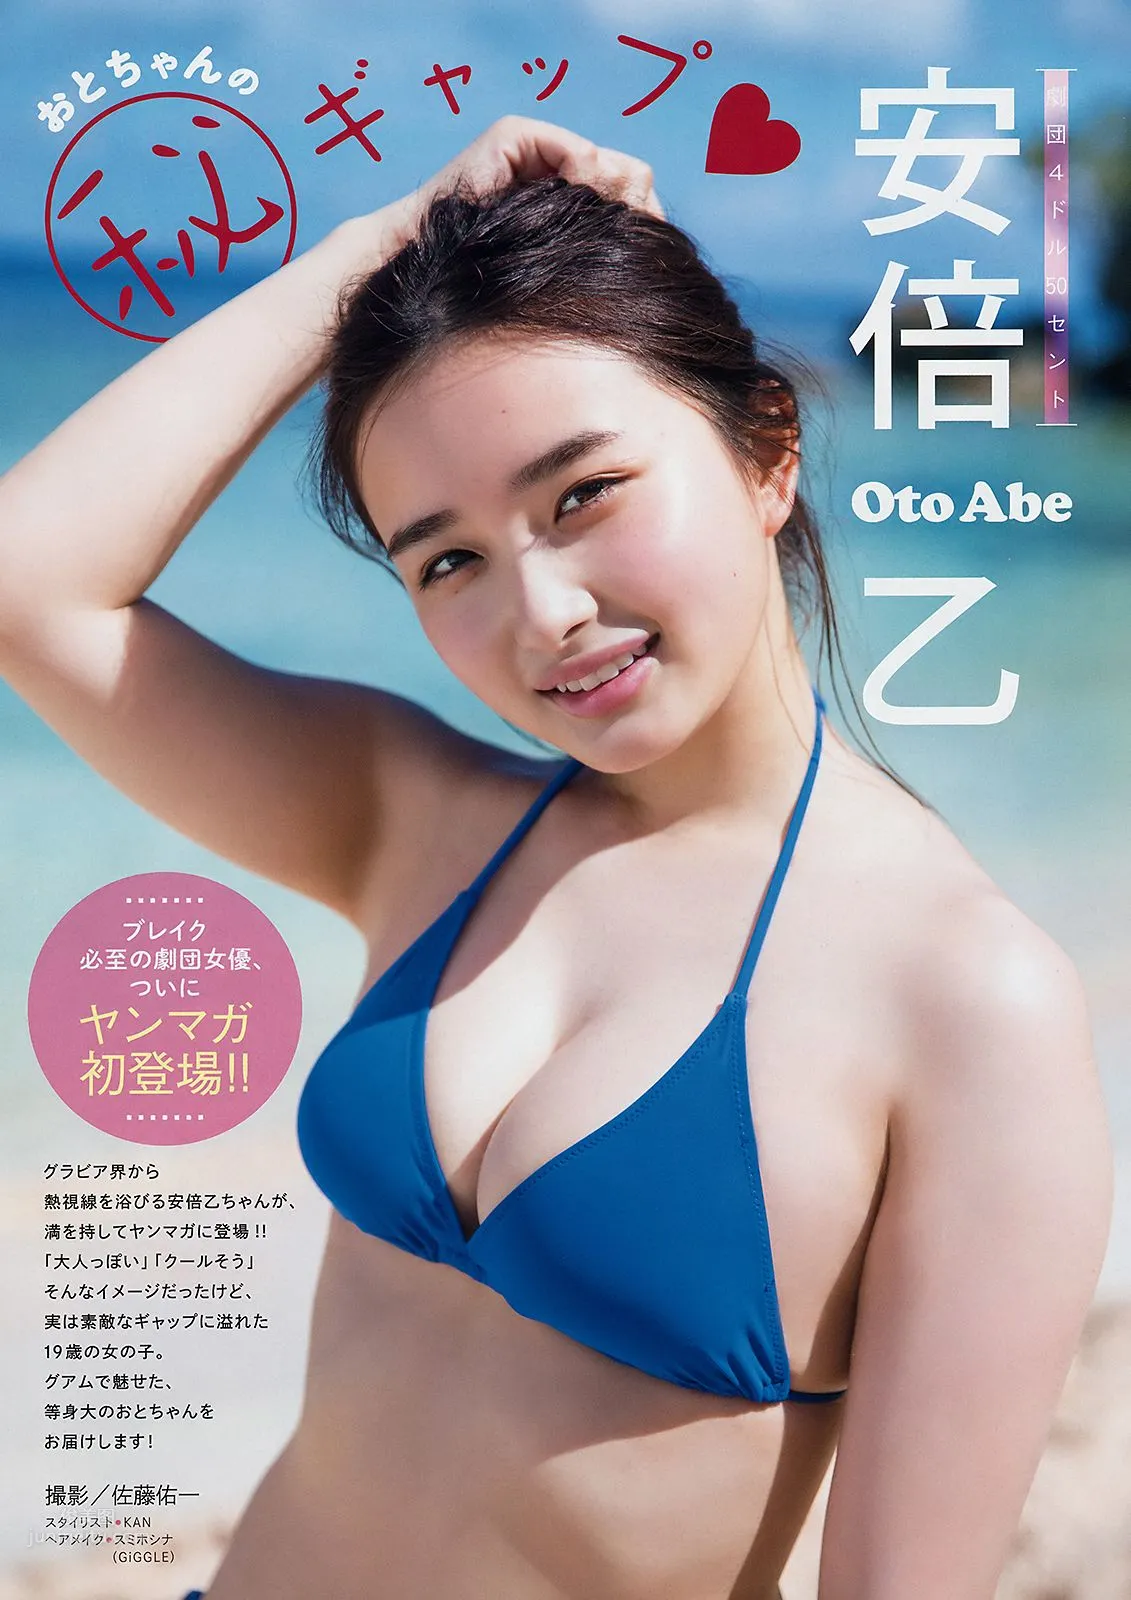 安倍乙, Abe Oto - Young Magazine, 2019.08.05_1